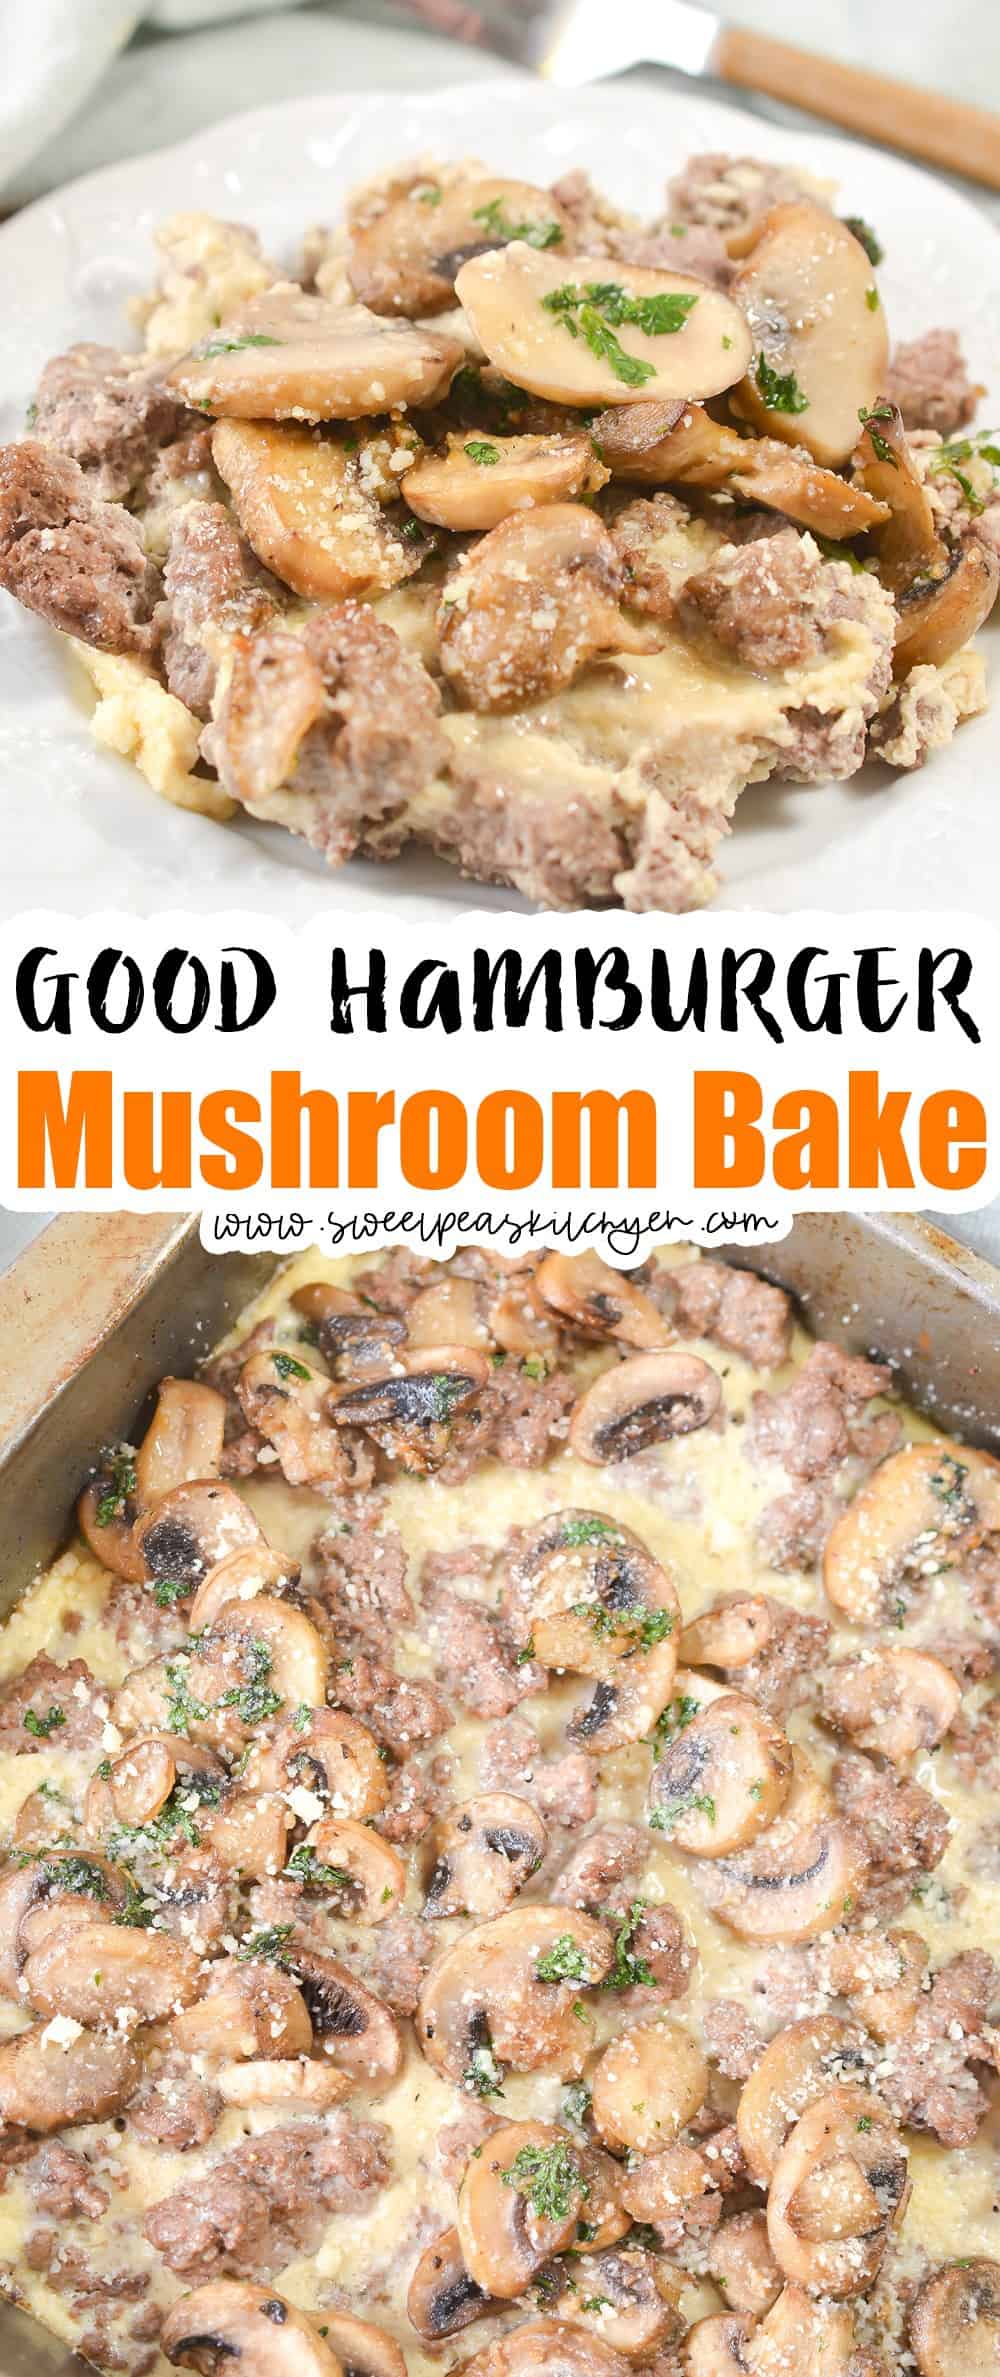 Hamburger Mushroom Bake on pinterest